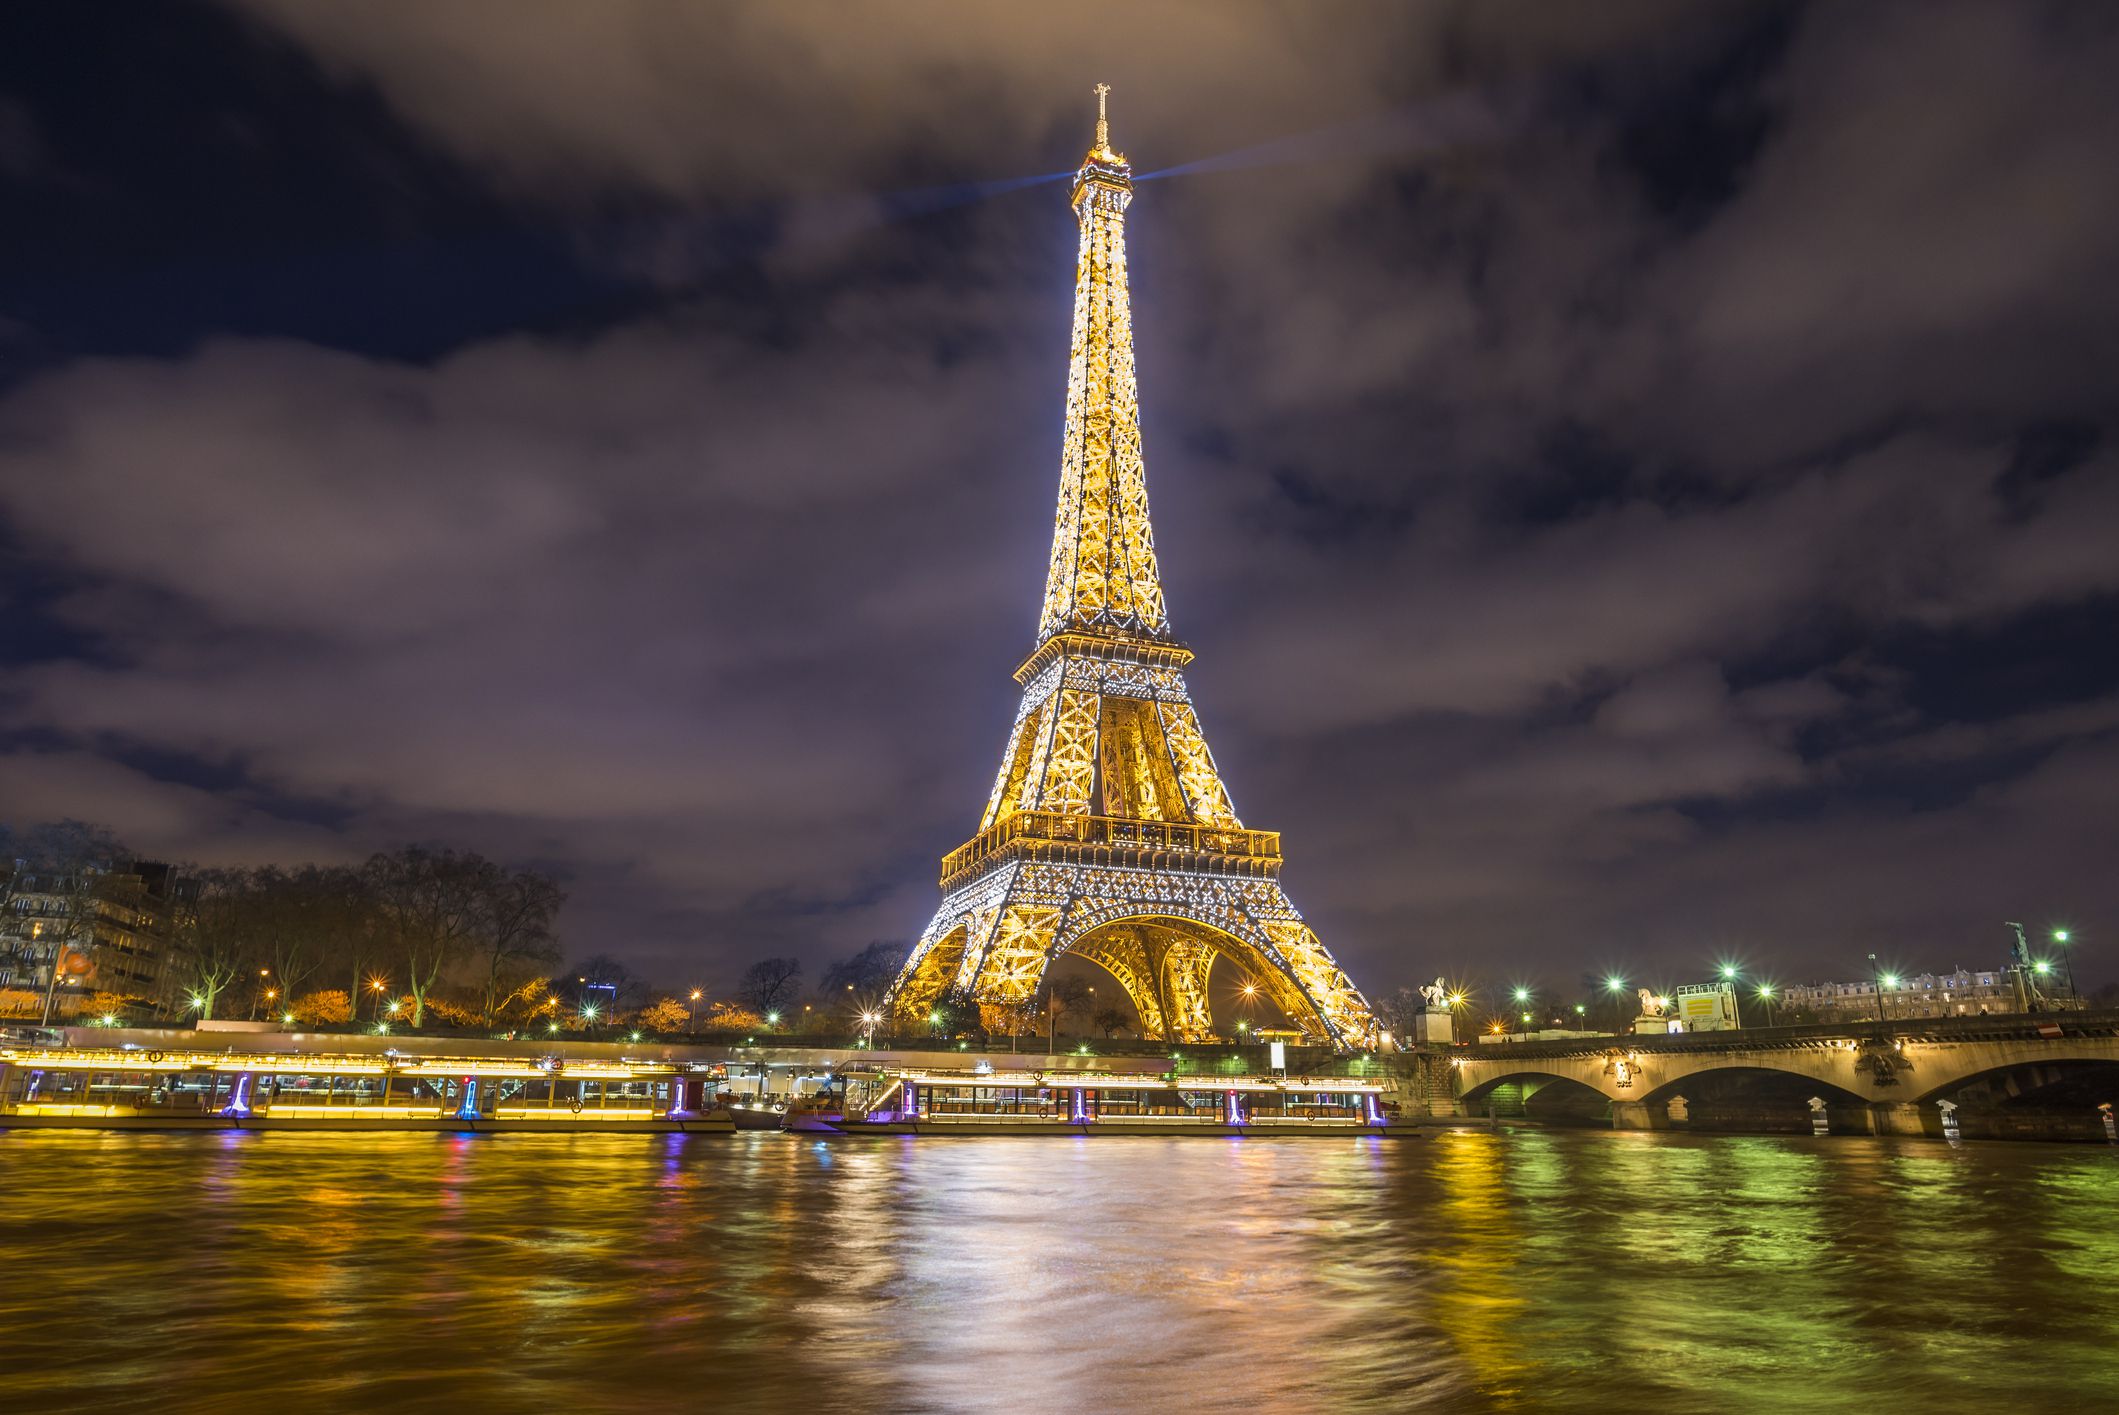 法国巴黎 埃菲尔铁塔电梯登顶票 eiffel tower(免打印